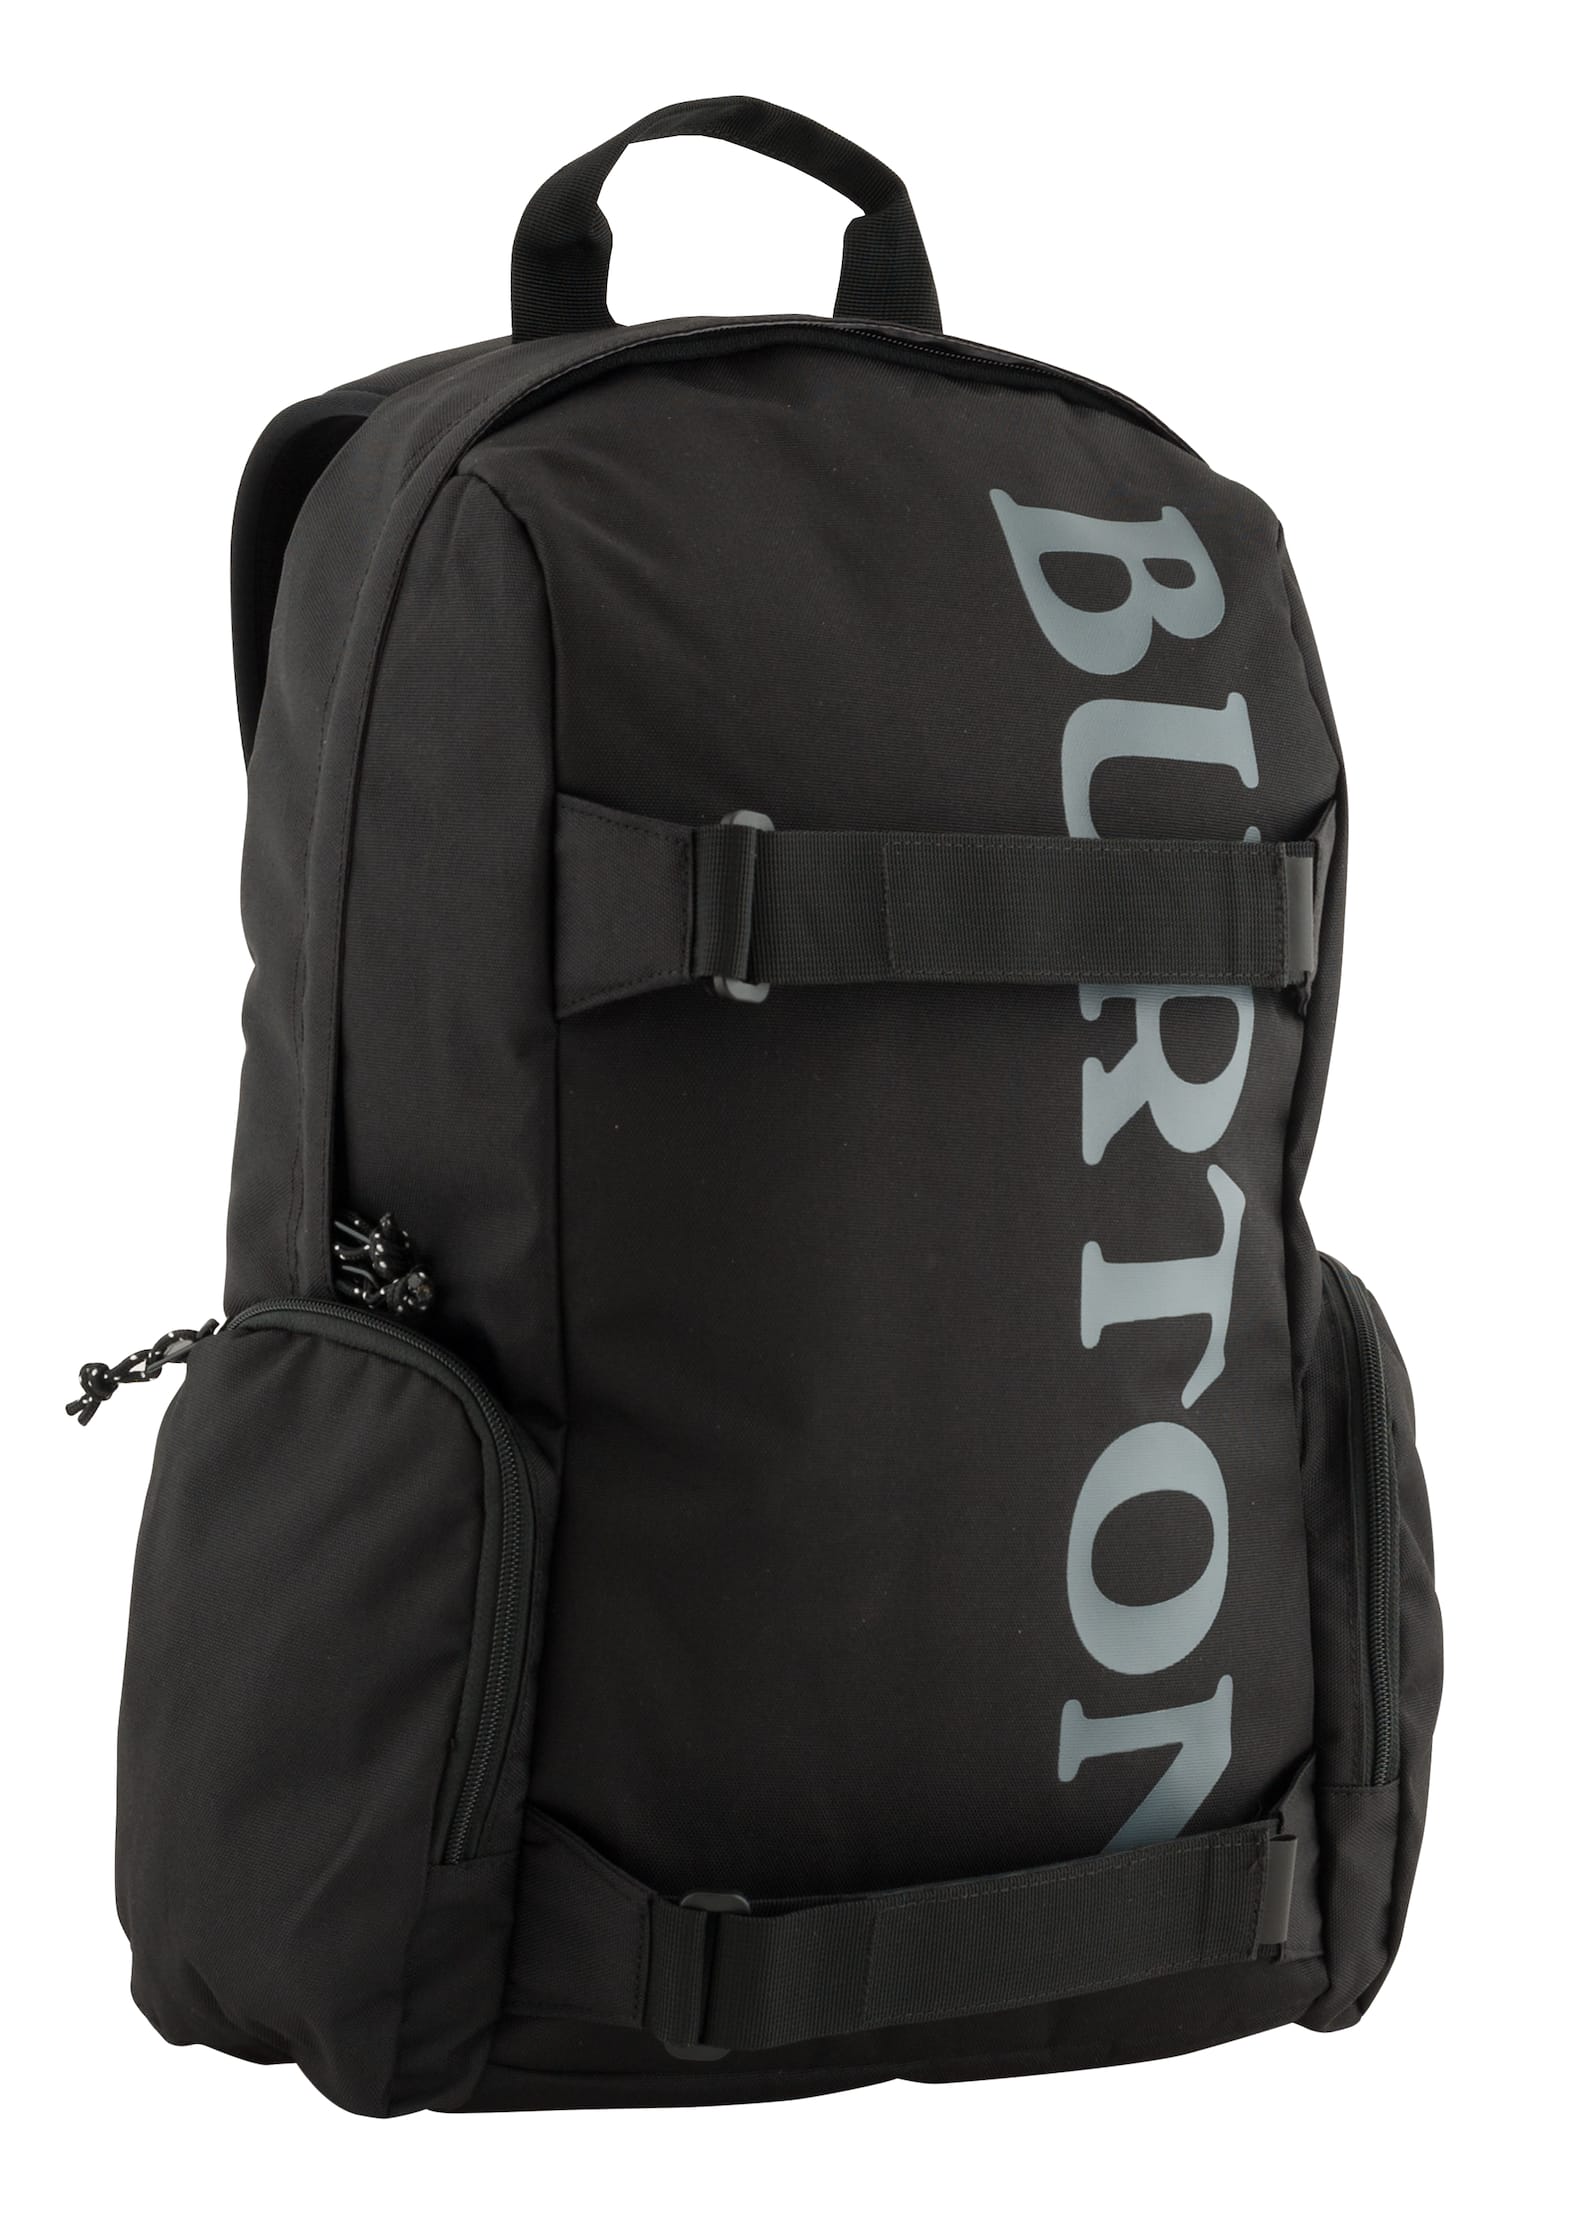 Burton Emphasis 26L Backpack | Burton.com Spring 2020 DK